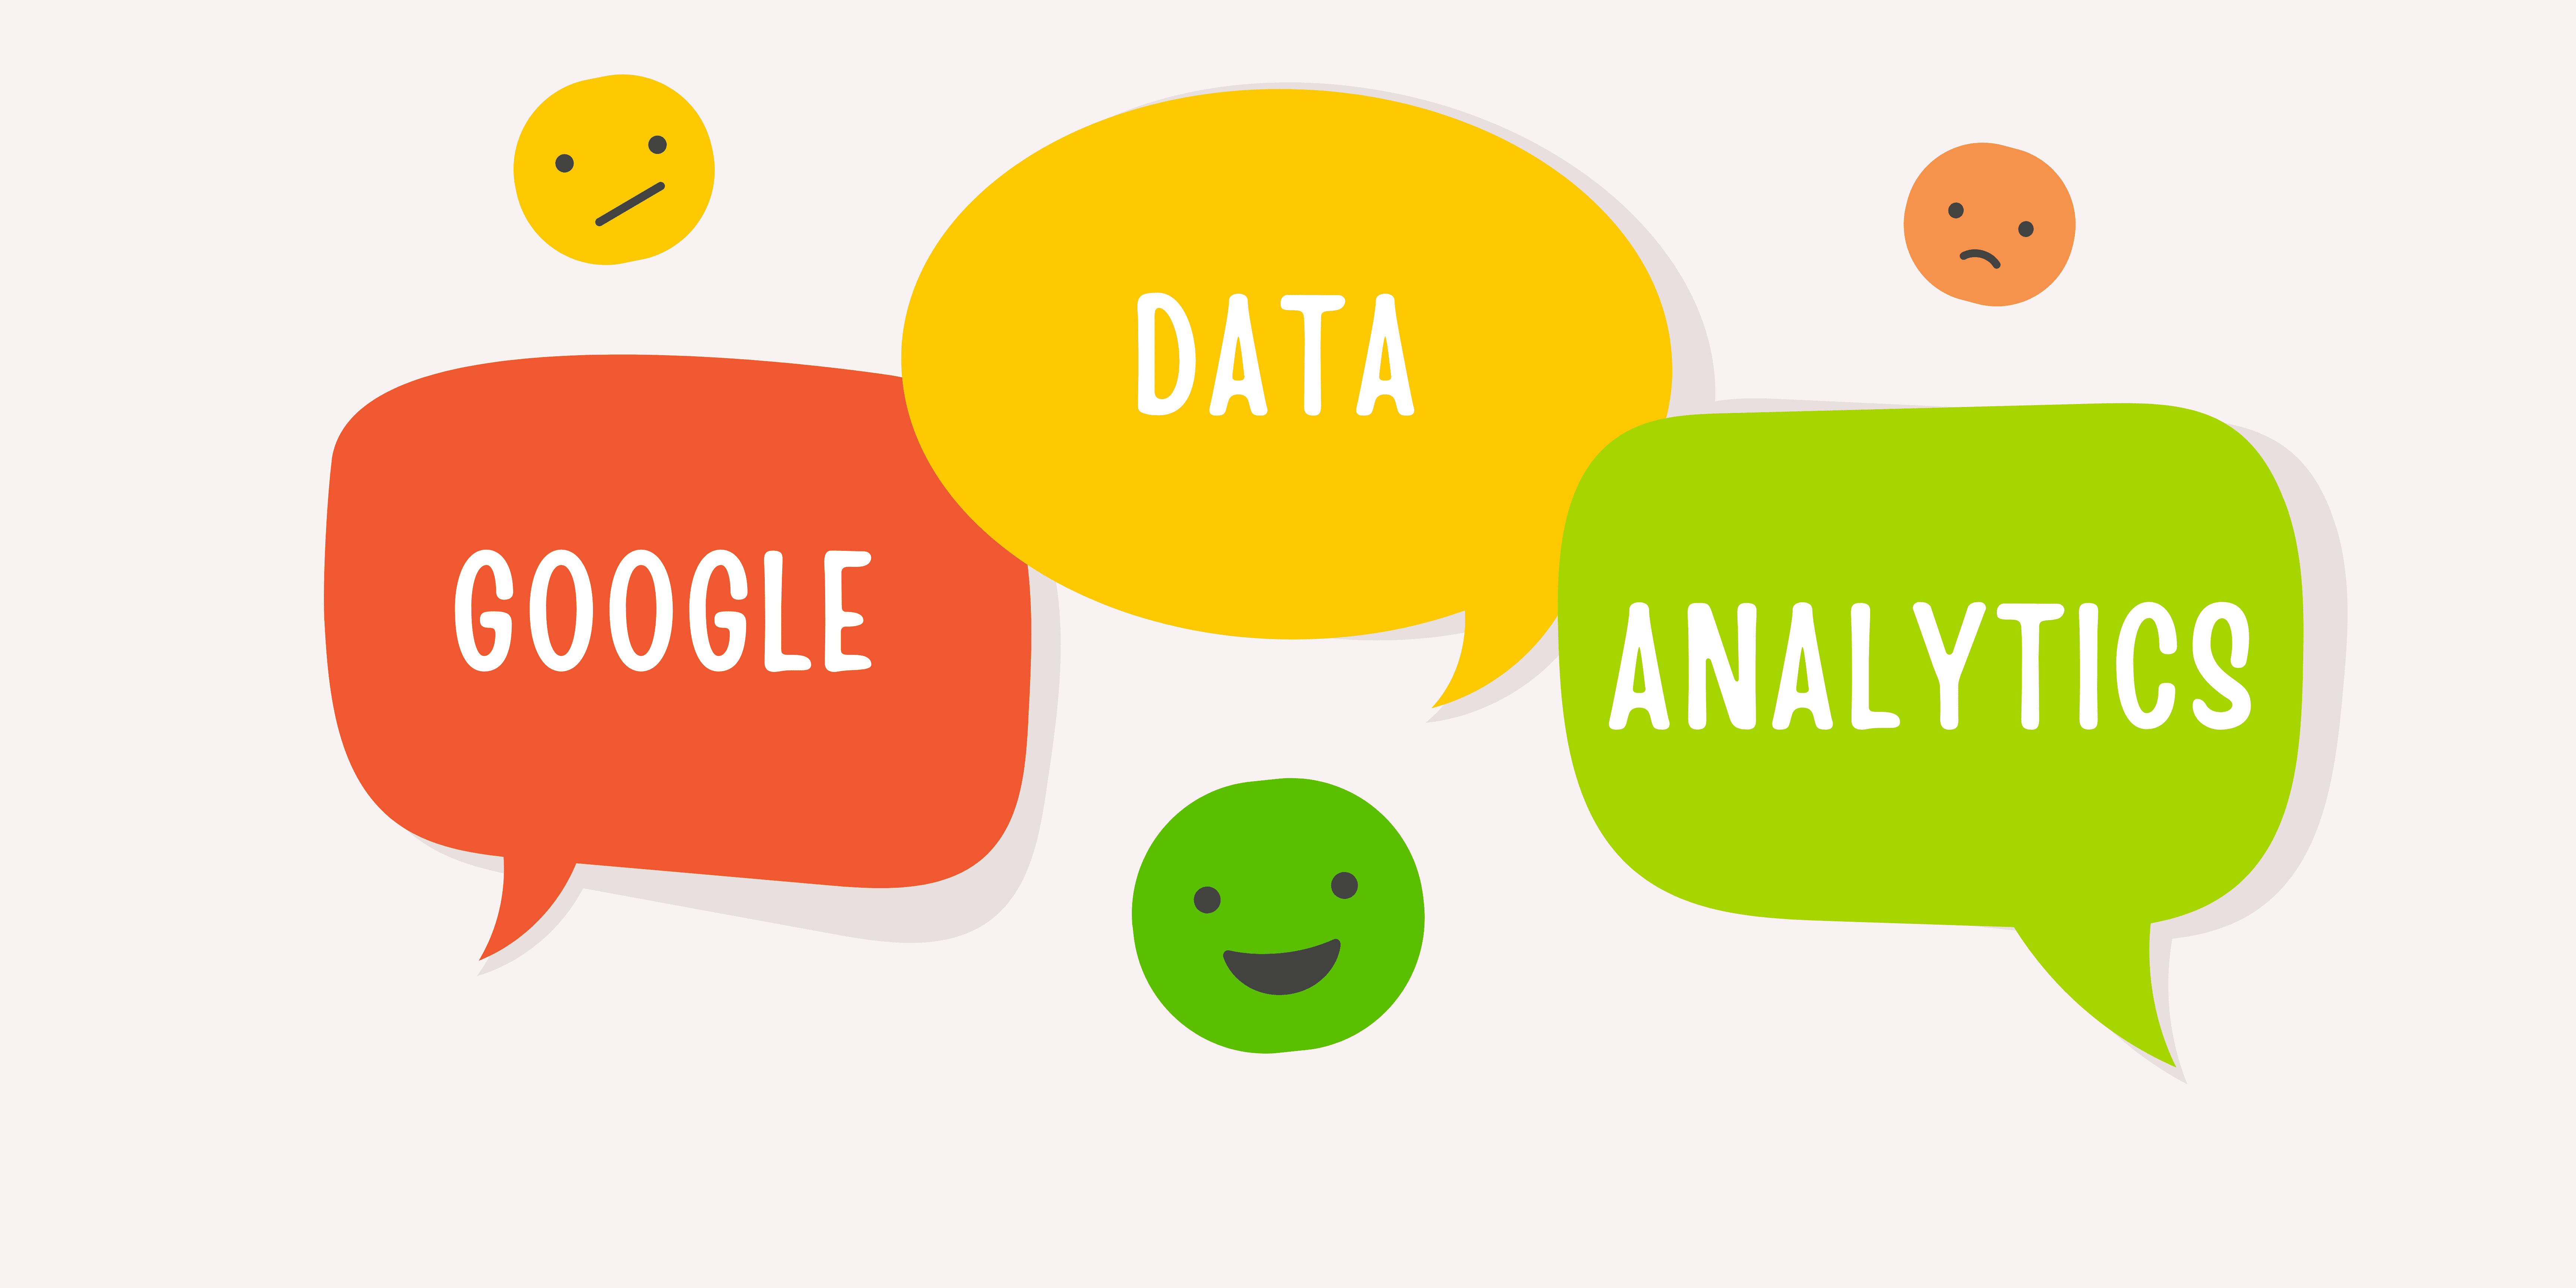 Google data analysis